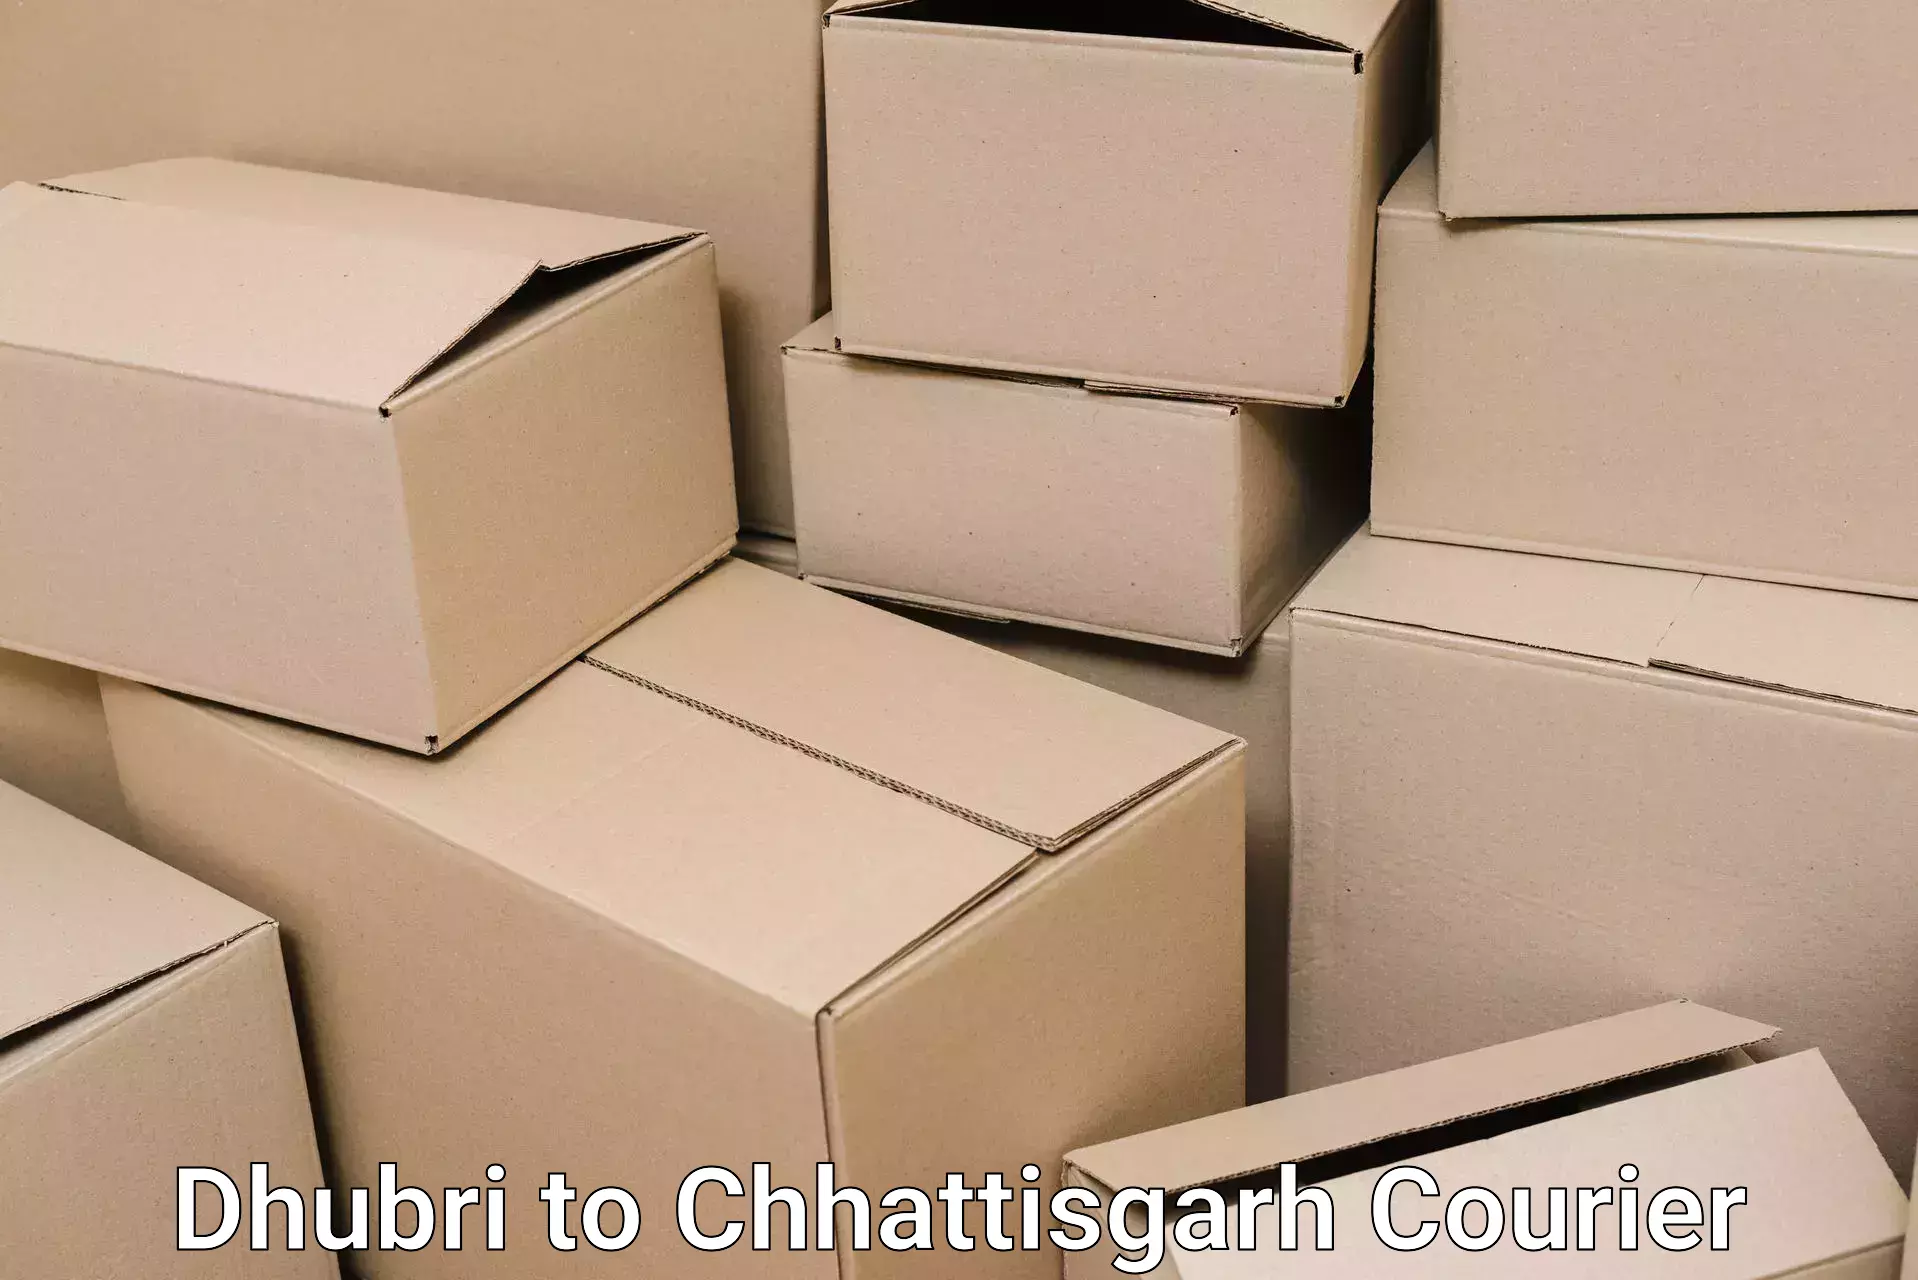 Furniture delivery service Dhubri to Chhattisgarh